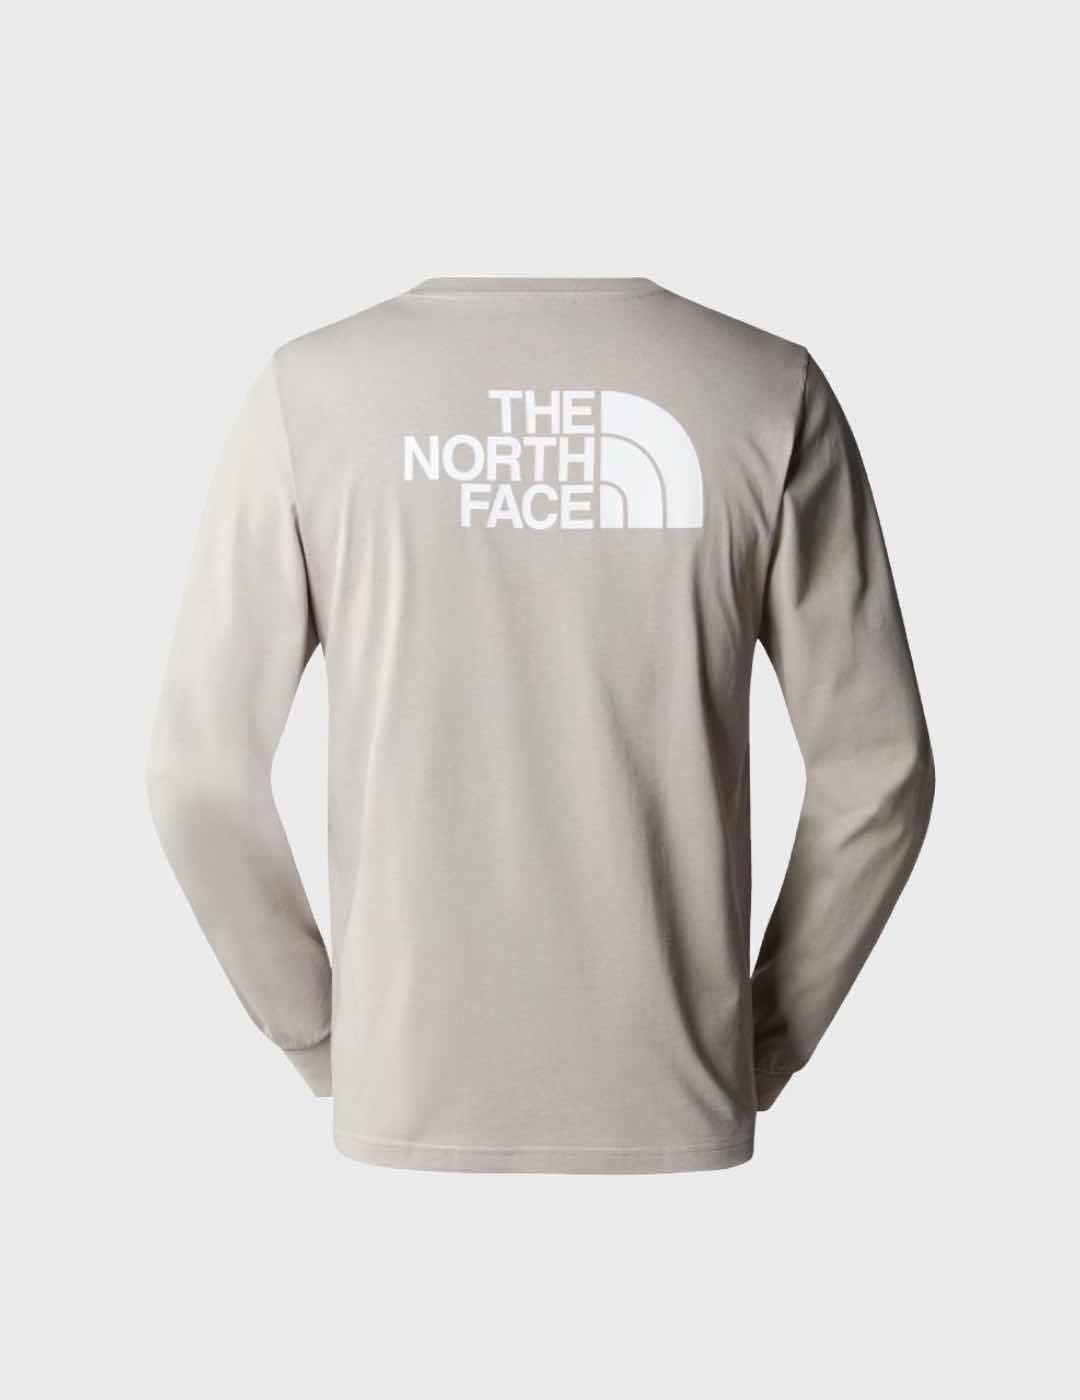 Camiseta The North Face M L/s Easy GravelGrey/Wht